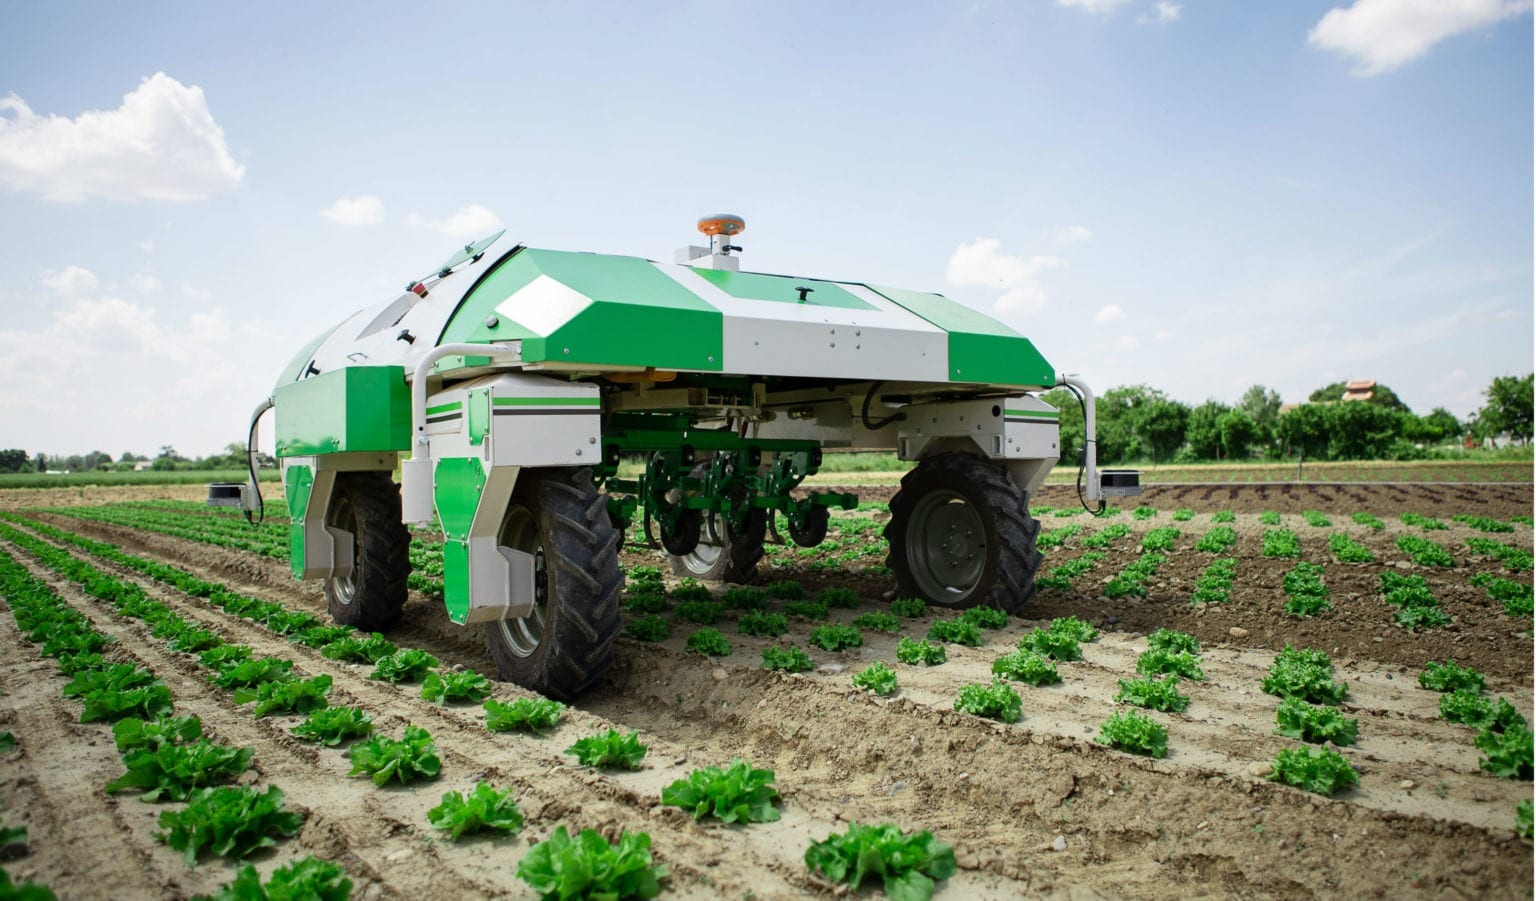 Le grand défi "Robotique agricole" lancé dans l'Allier